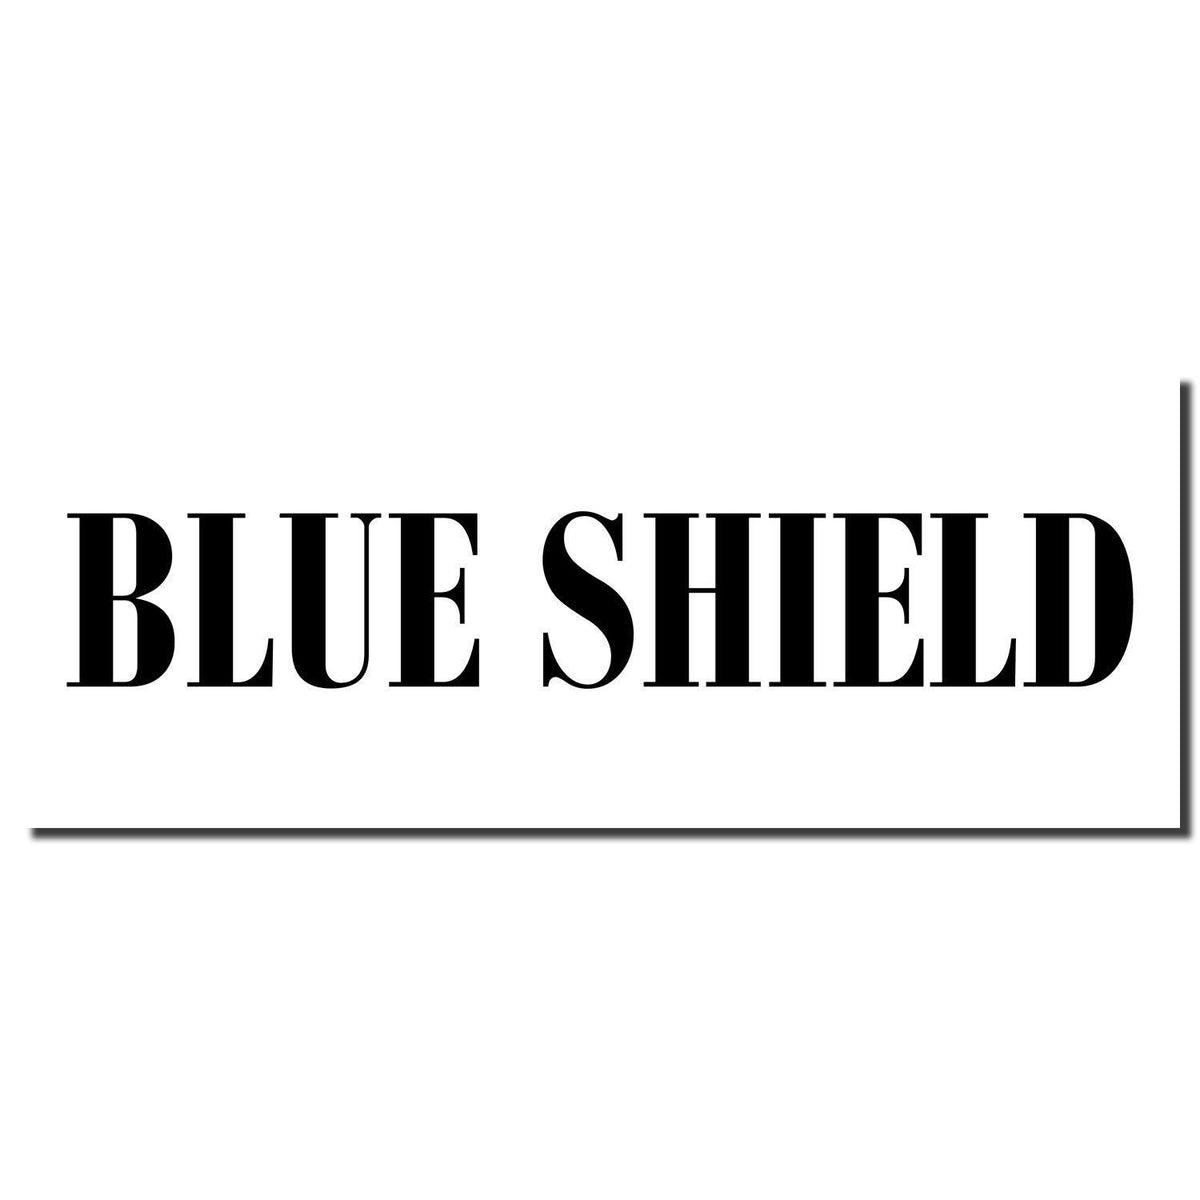 Enlarged Imprint Blue Shield Rubber Stamp Sample